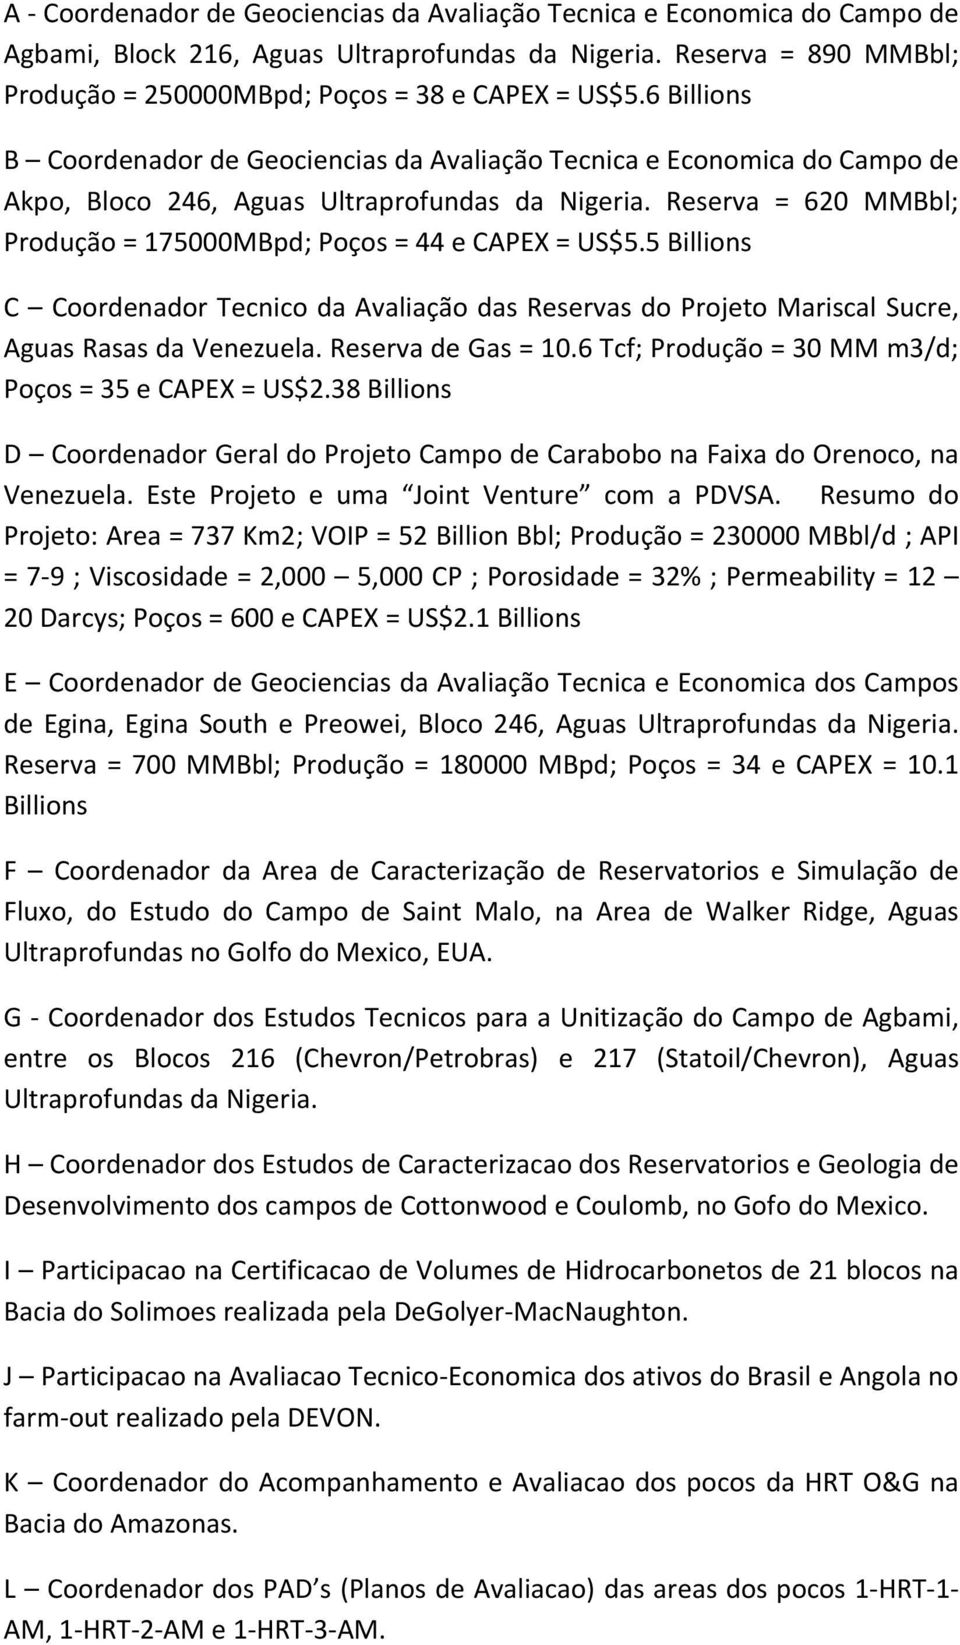 Reserva = 620 MMBbl; Produção = 175000MBpd; Poços = 44 e CAPEX = US$5.5 Billions C Coordenador Tecnico da Avaliação das Reservas do Projeto Mariscal Sucre, Aguas Rasas da Venezuela.